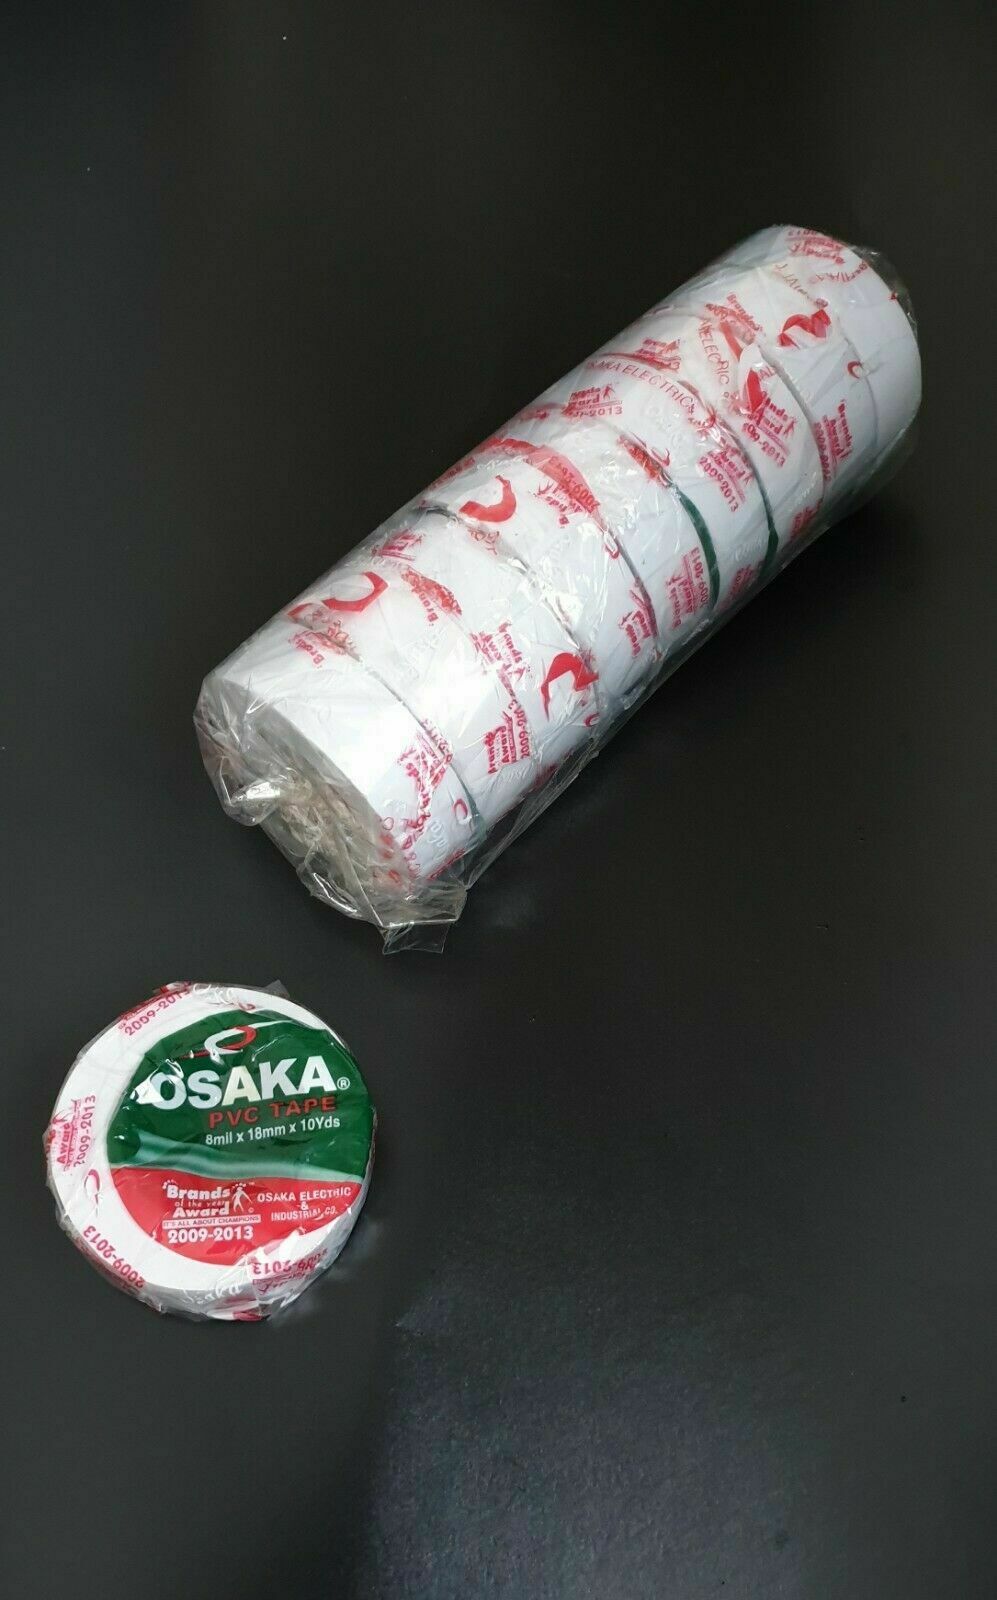 Osaka PVC Tape Roll Cricket Tennis White Pack of 10